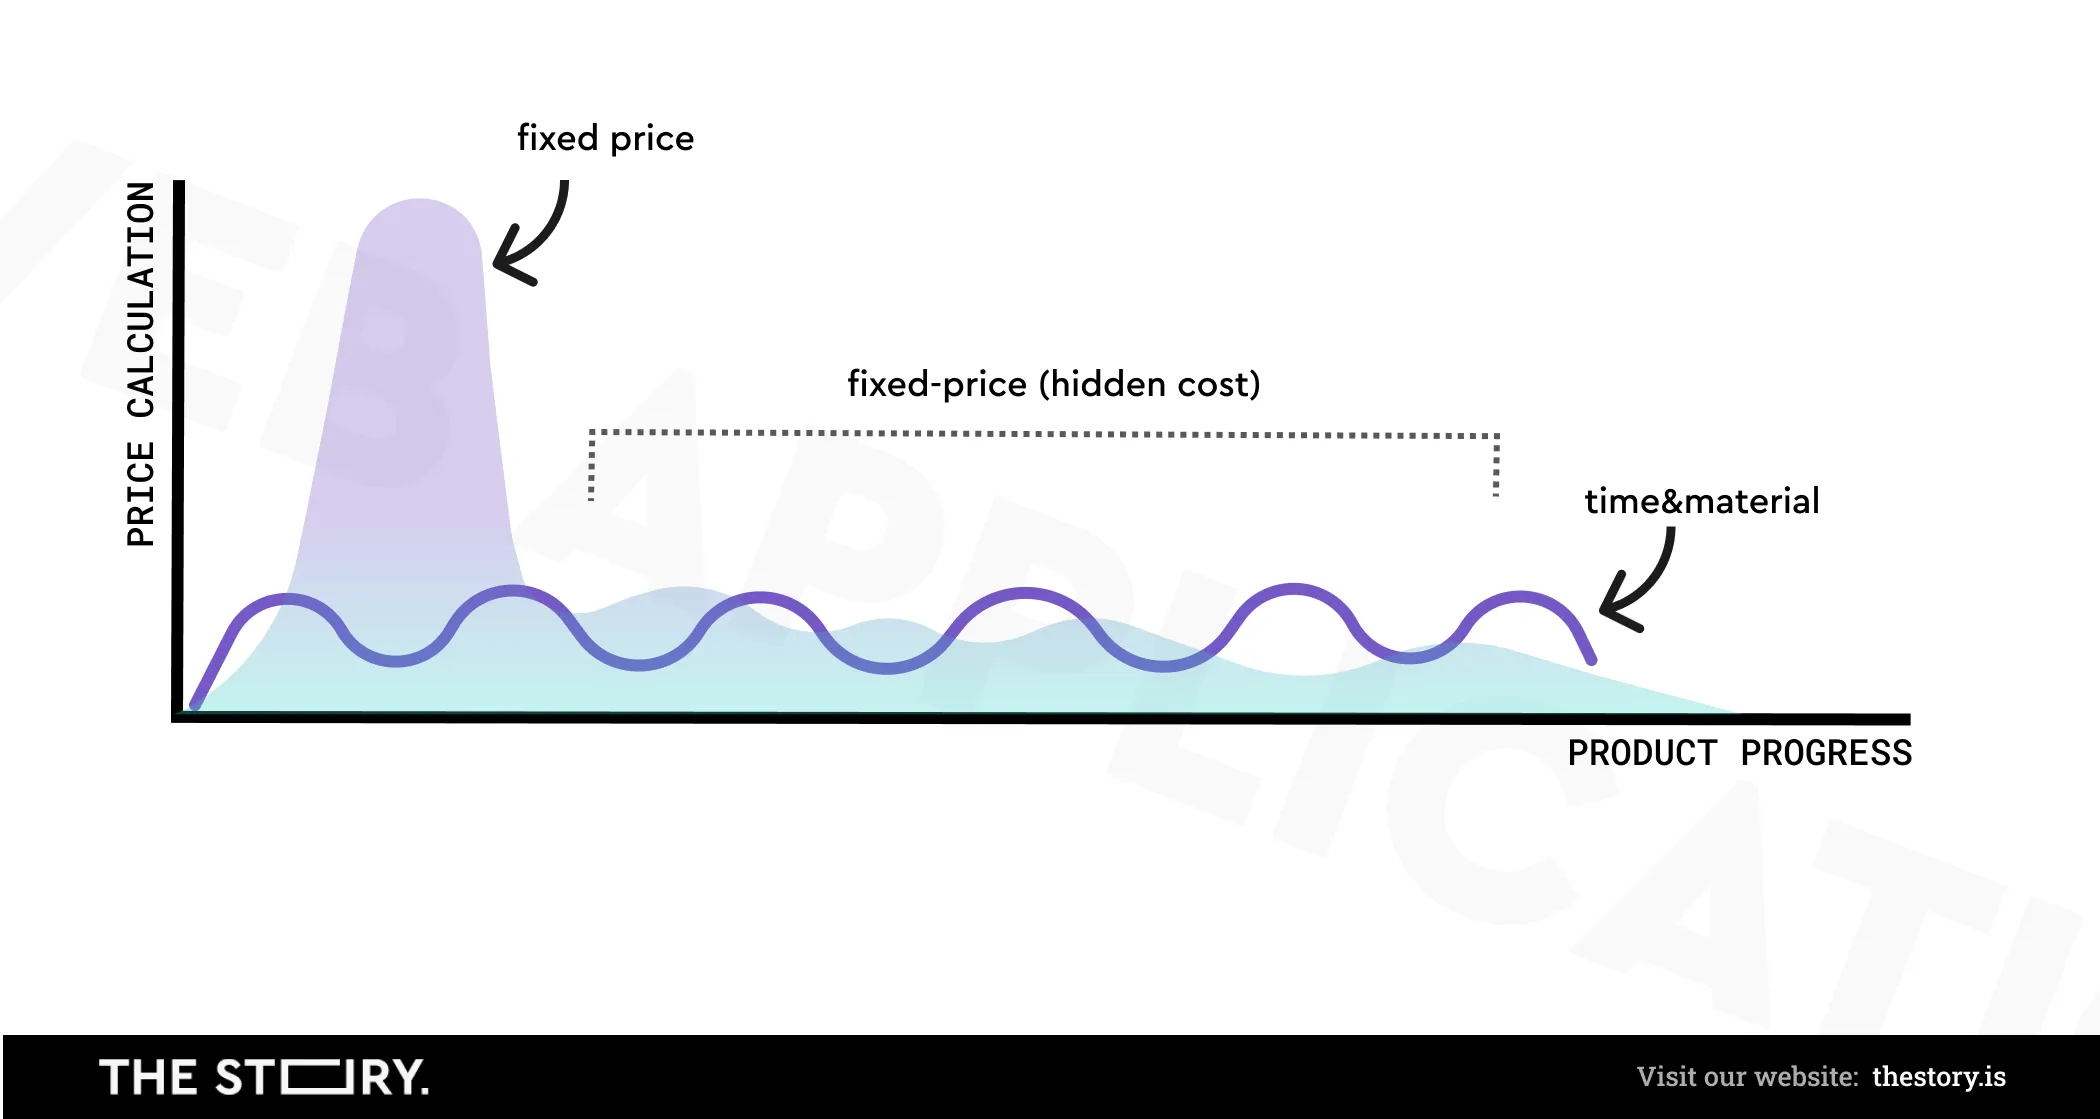 Diagramm zum Vergleich der Kosten zwischen Festpreis und Zeit und Material